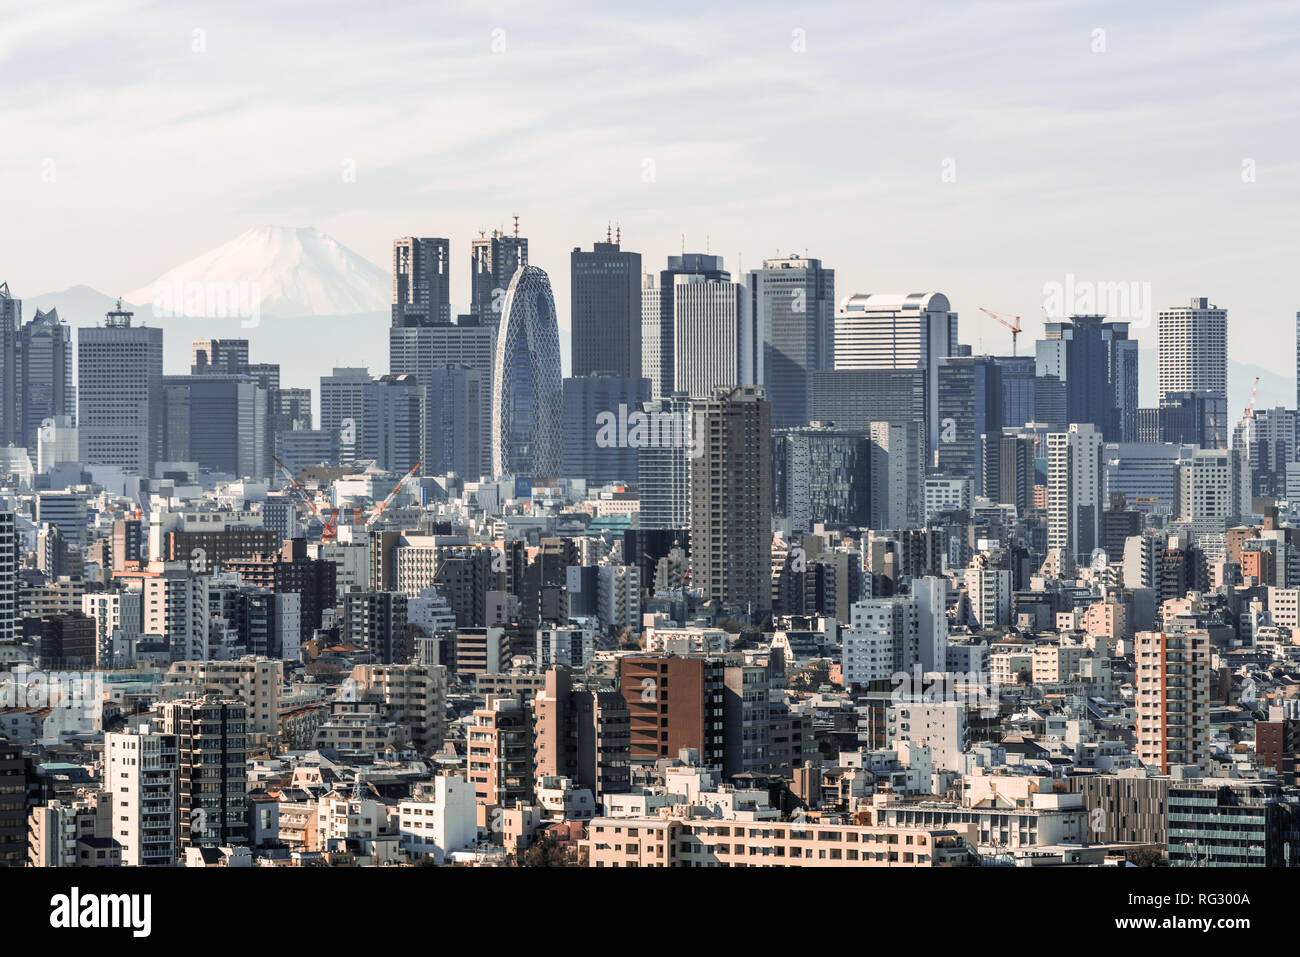 Vista aérea de la ciudad de Shinjuku con edificios comerciales y casas, distrito de monte Fuji en segundo plano. Atracción turística de Tokio turismo Foto de stock